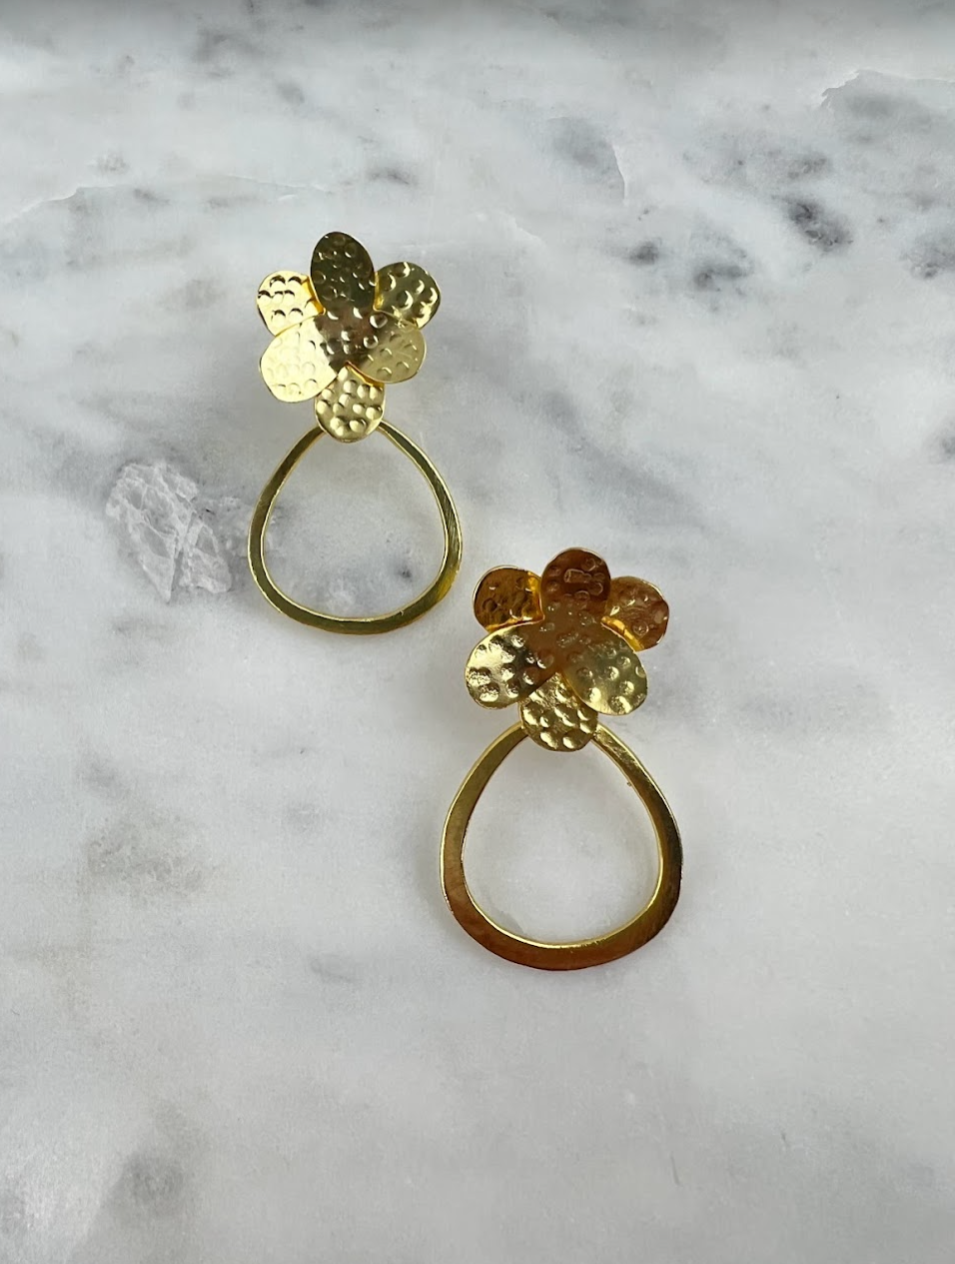 Flower Oval Gold Earrings Earrings in  at Wrapsody